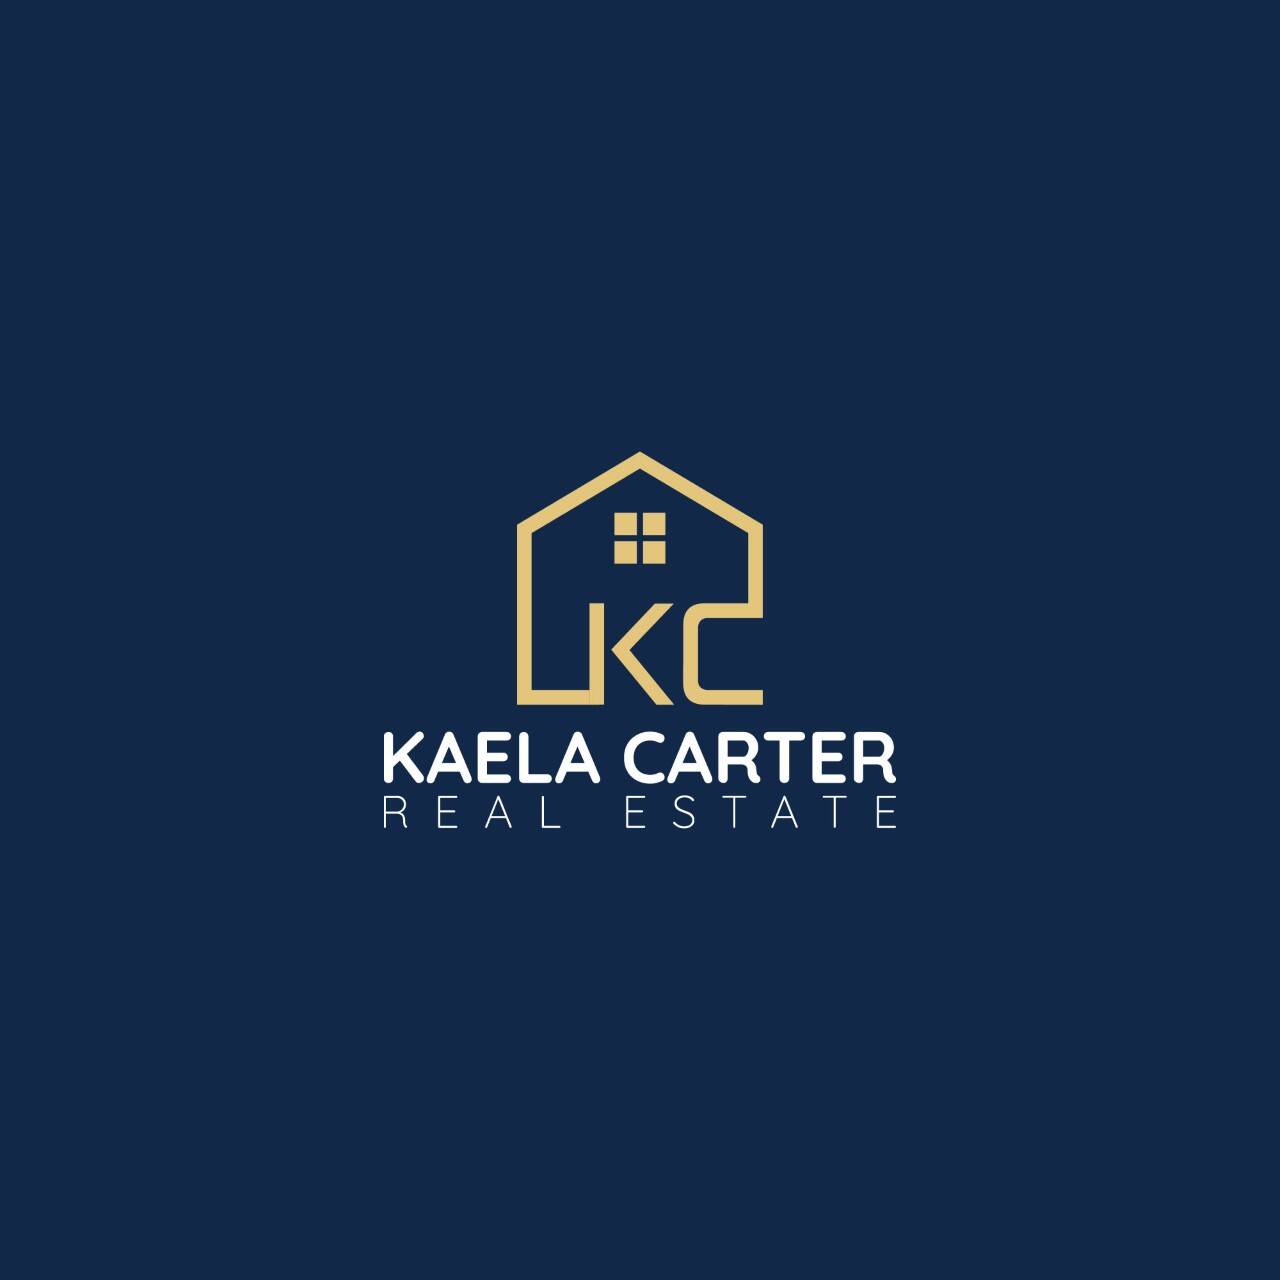 Kaela Carter Real Estate